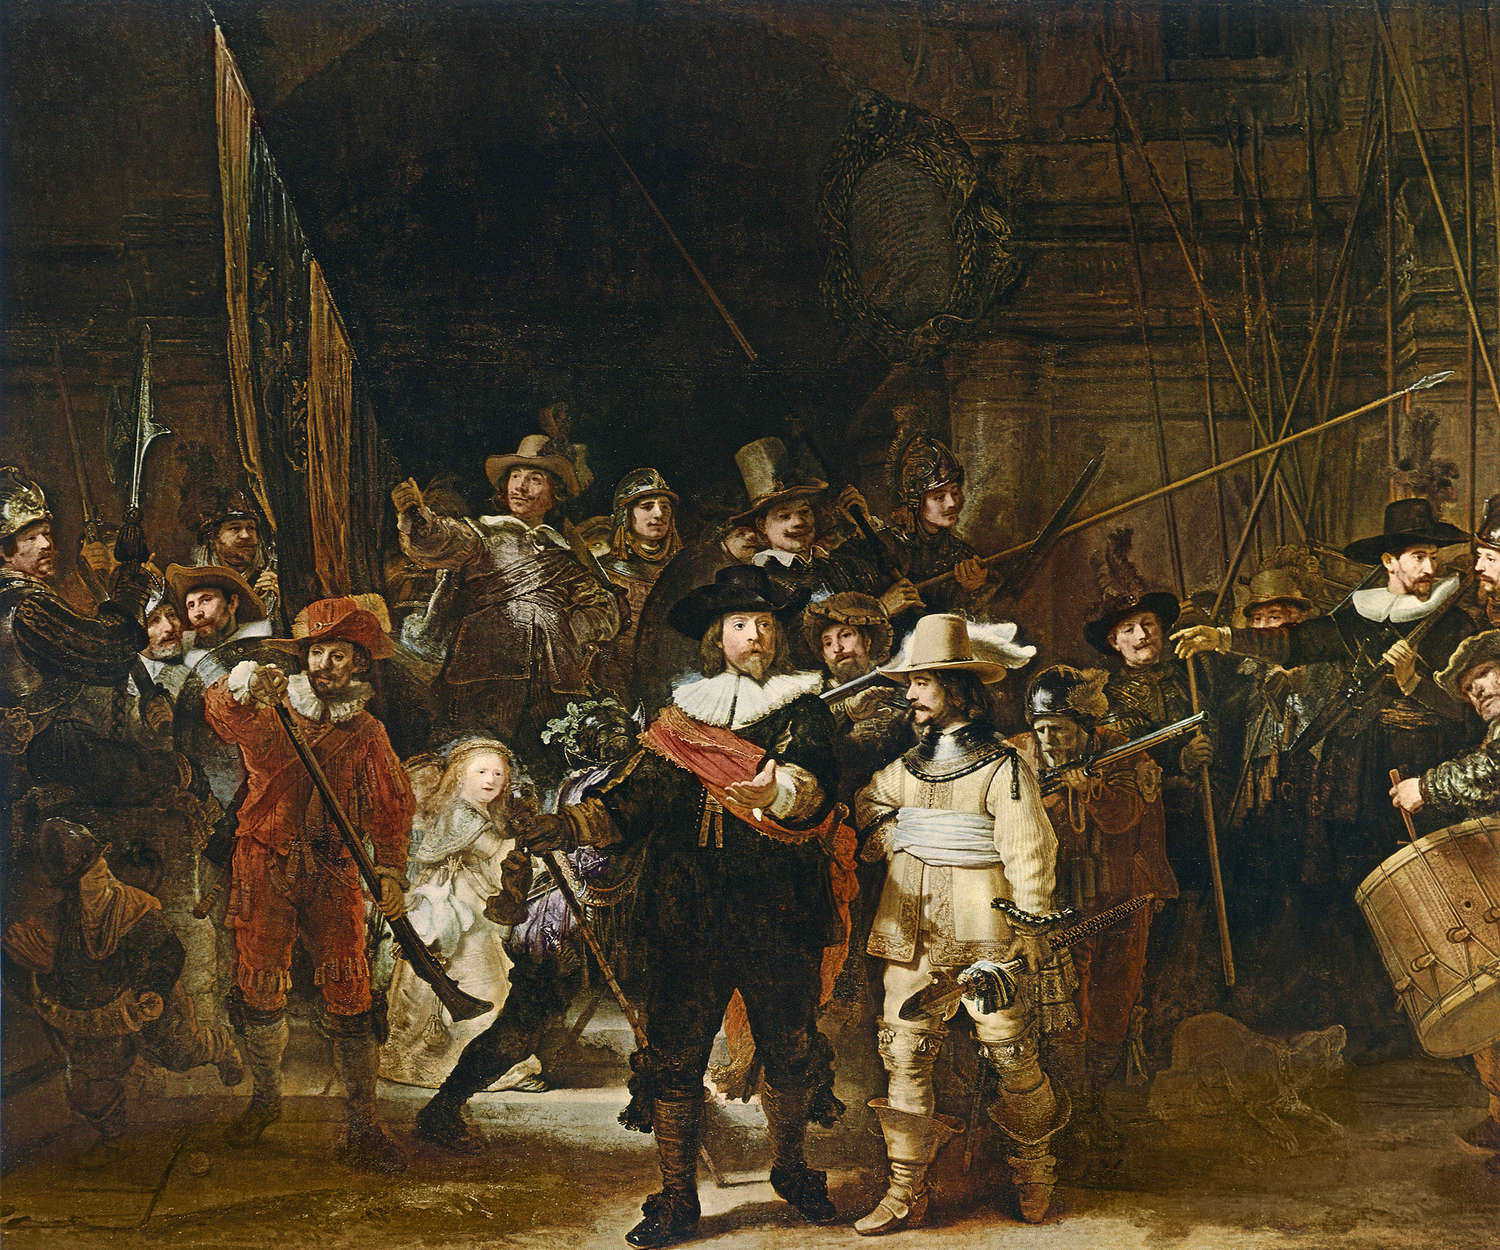             Fototapete "Die Nachtwache" von Rembrandt van Rijn
        